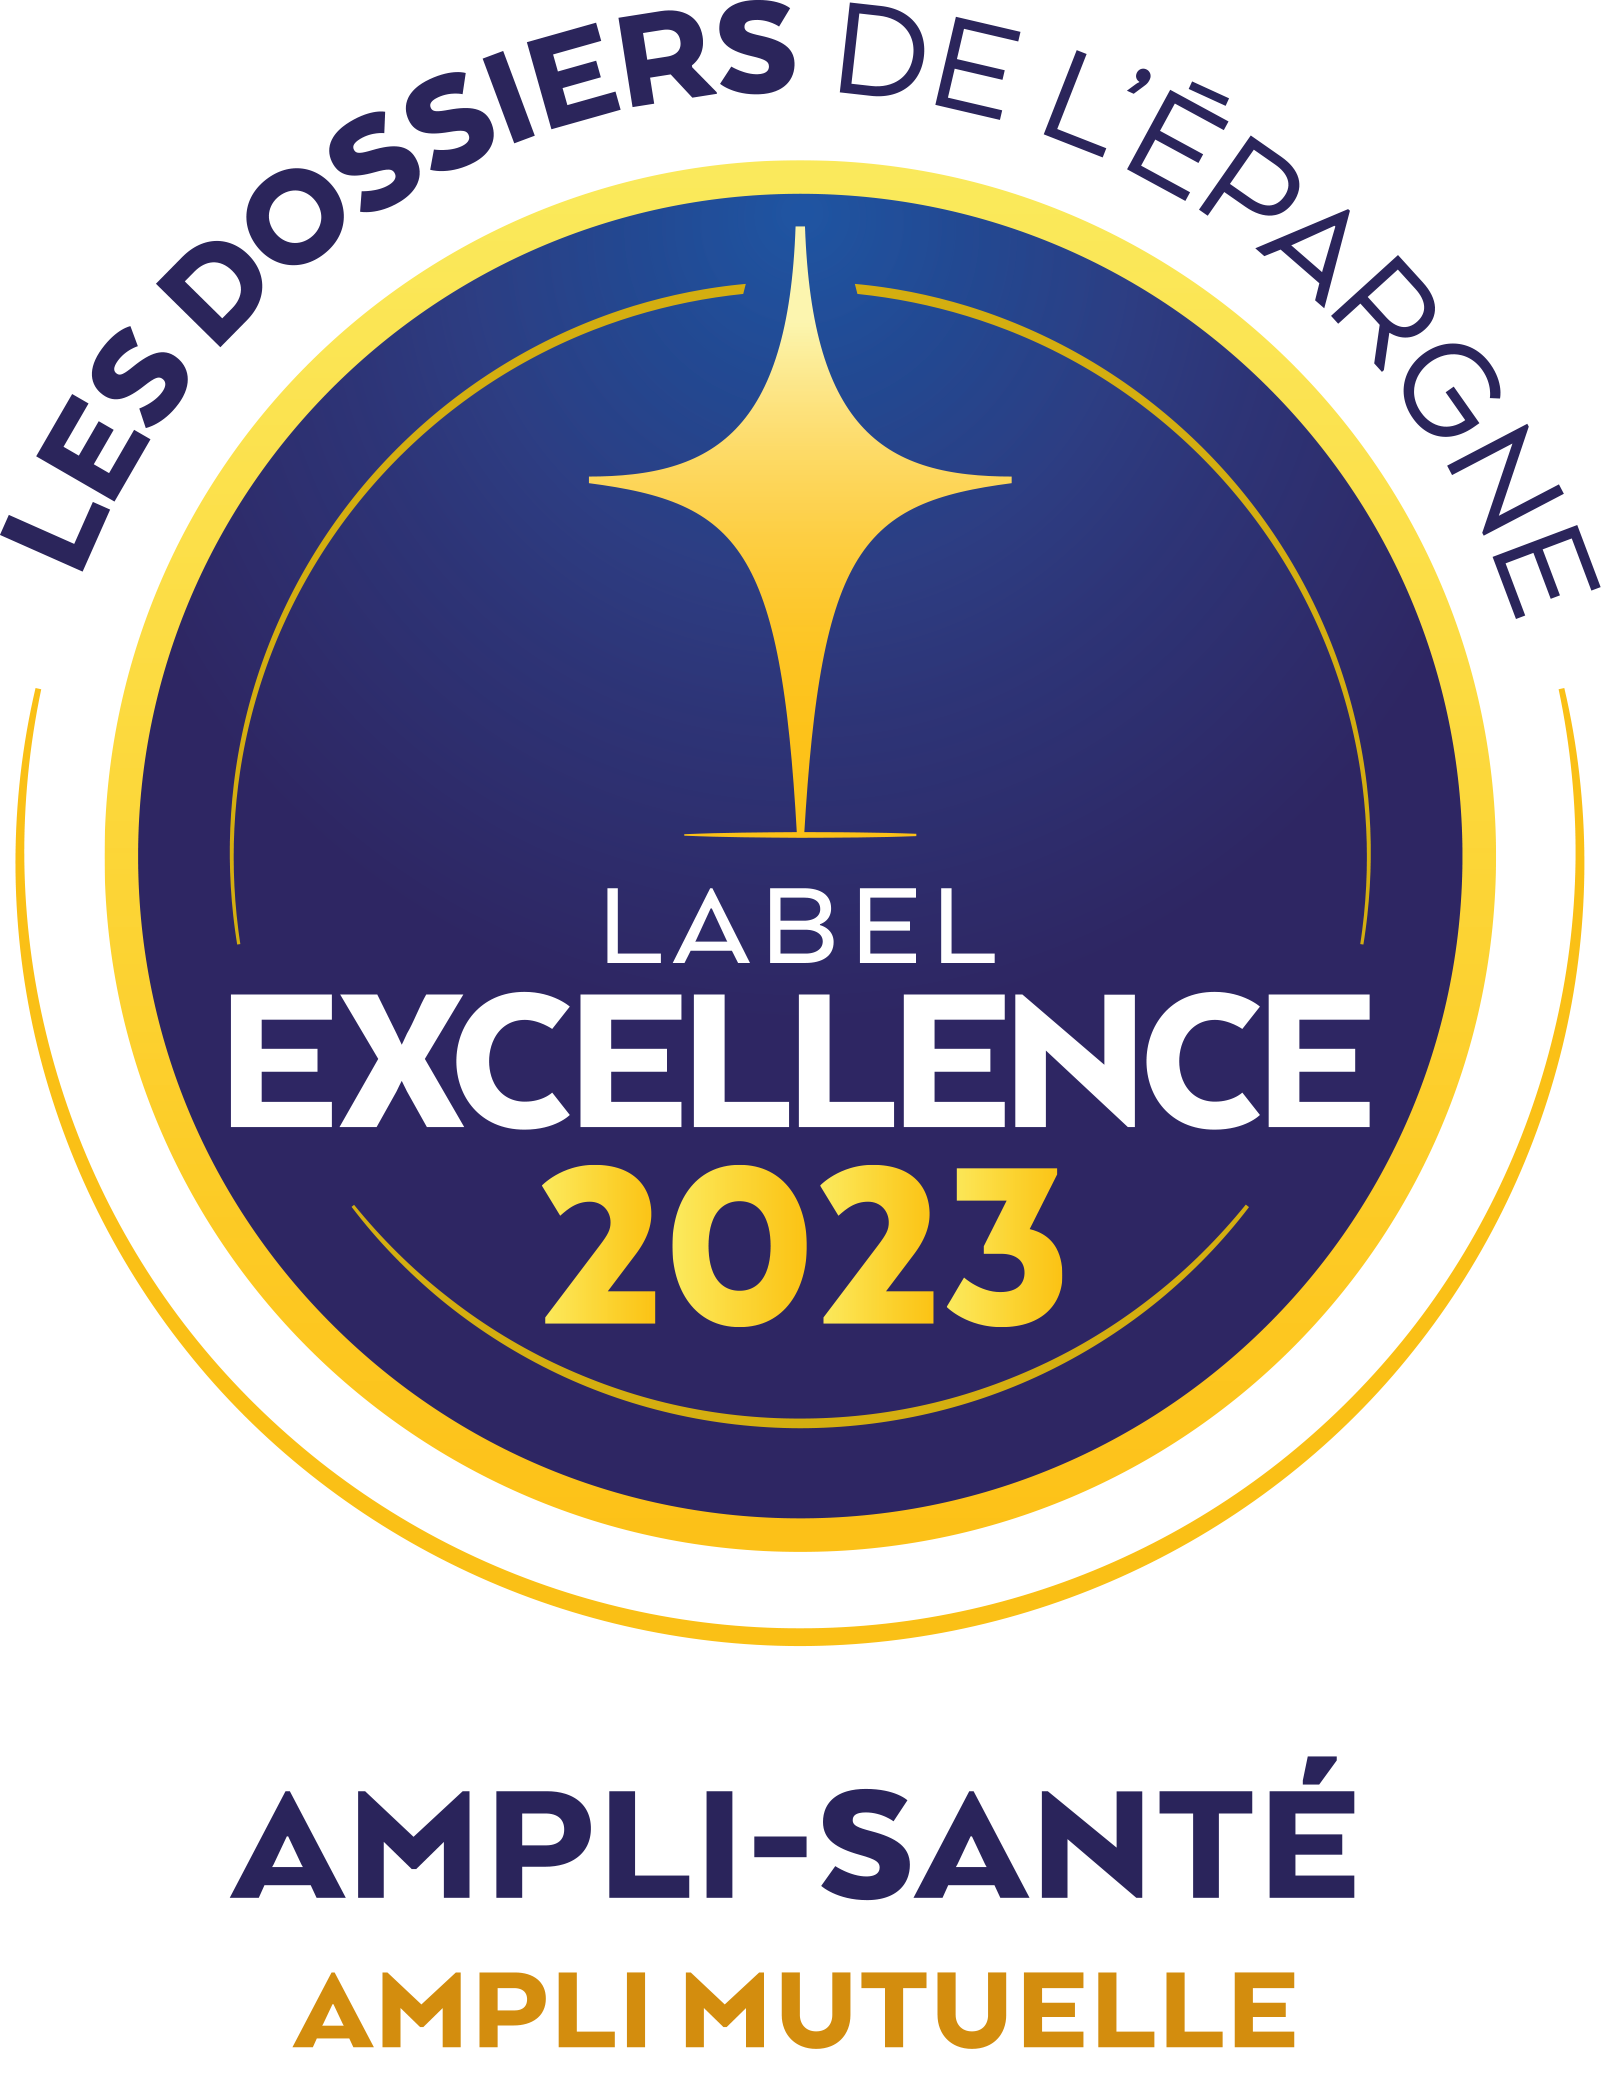 AMPLI Santé label excellence 2023